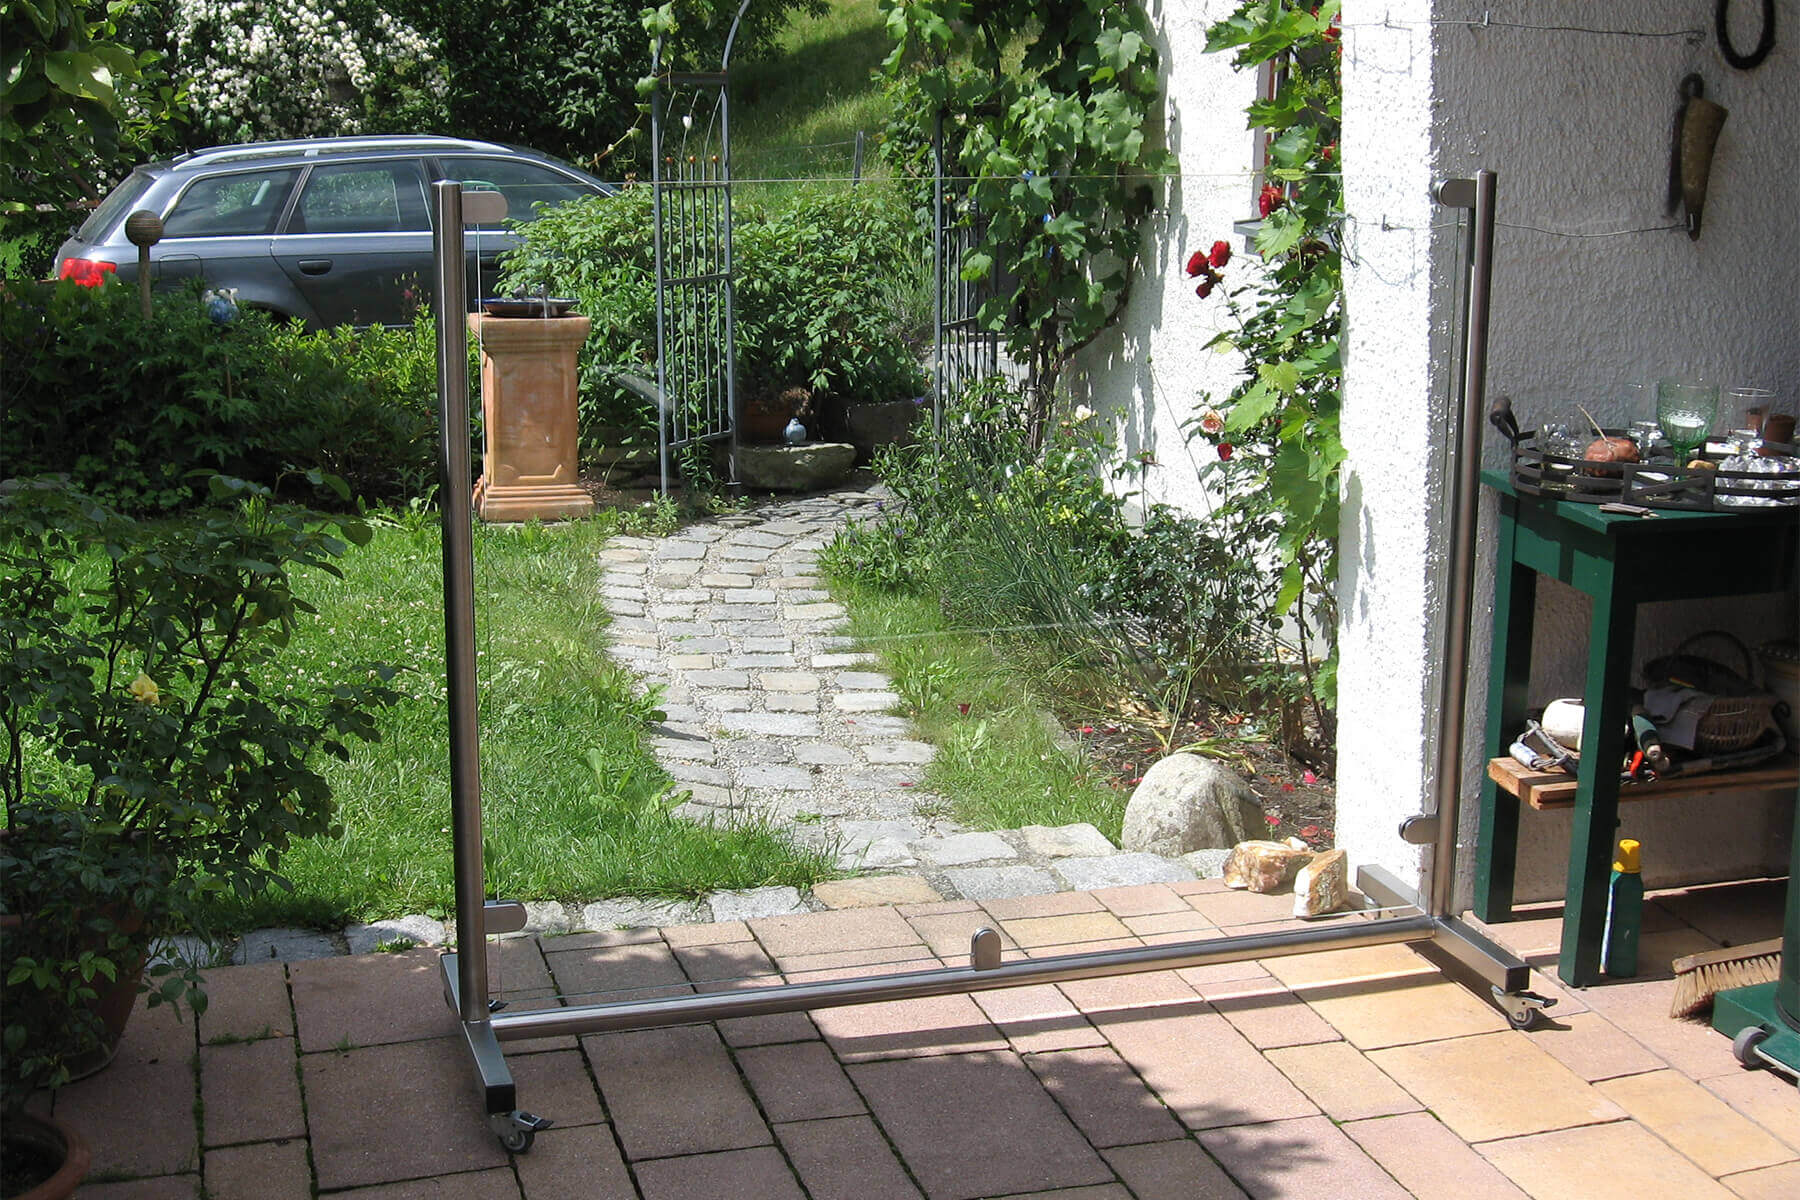 Rollbarer mobiler Windschutz ohne Sichteinschränkung flexibel platzierbar im Garten auf der Terrasse